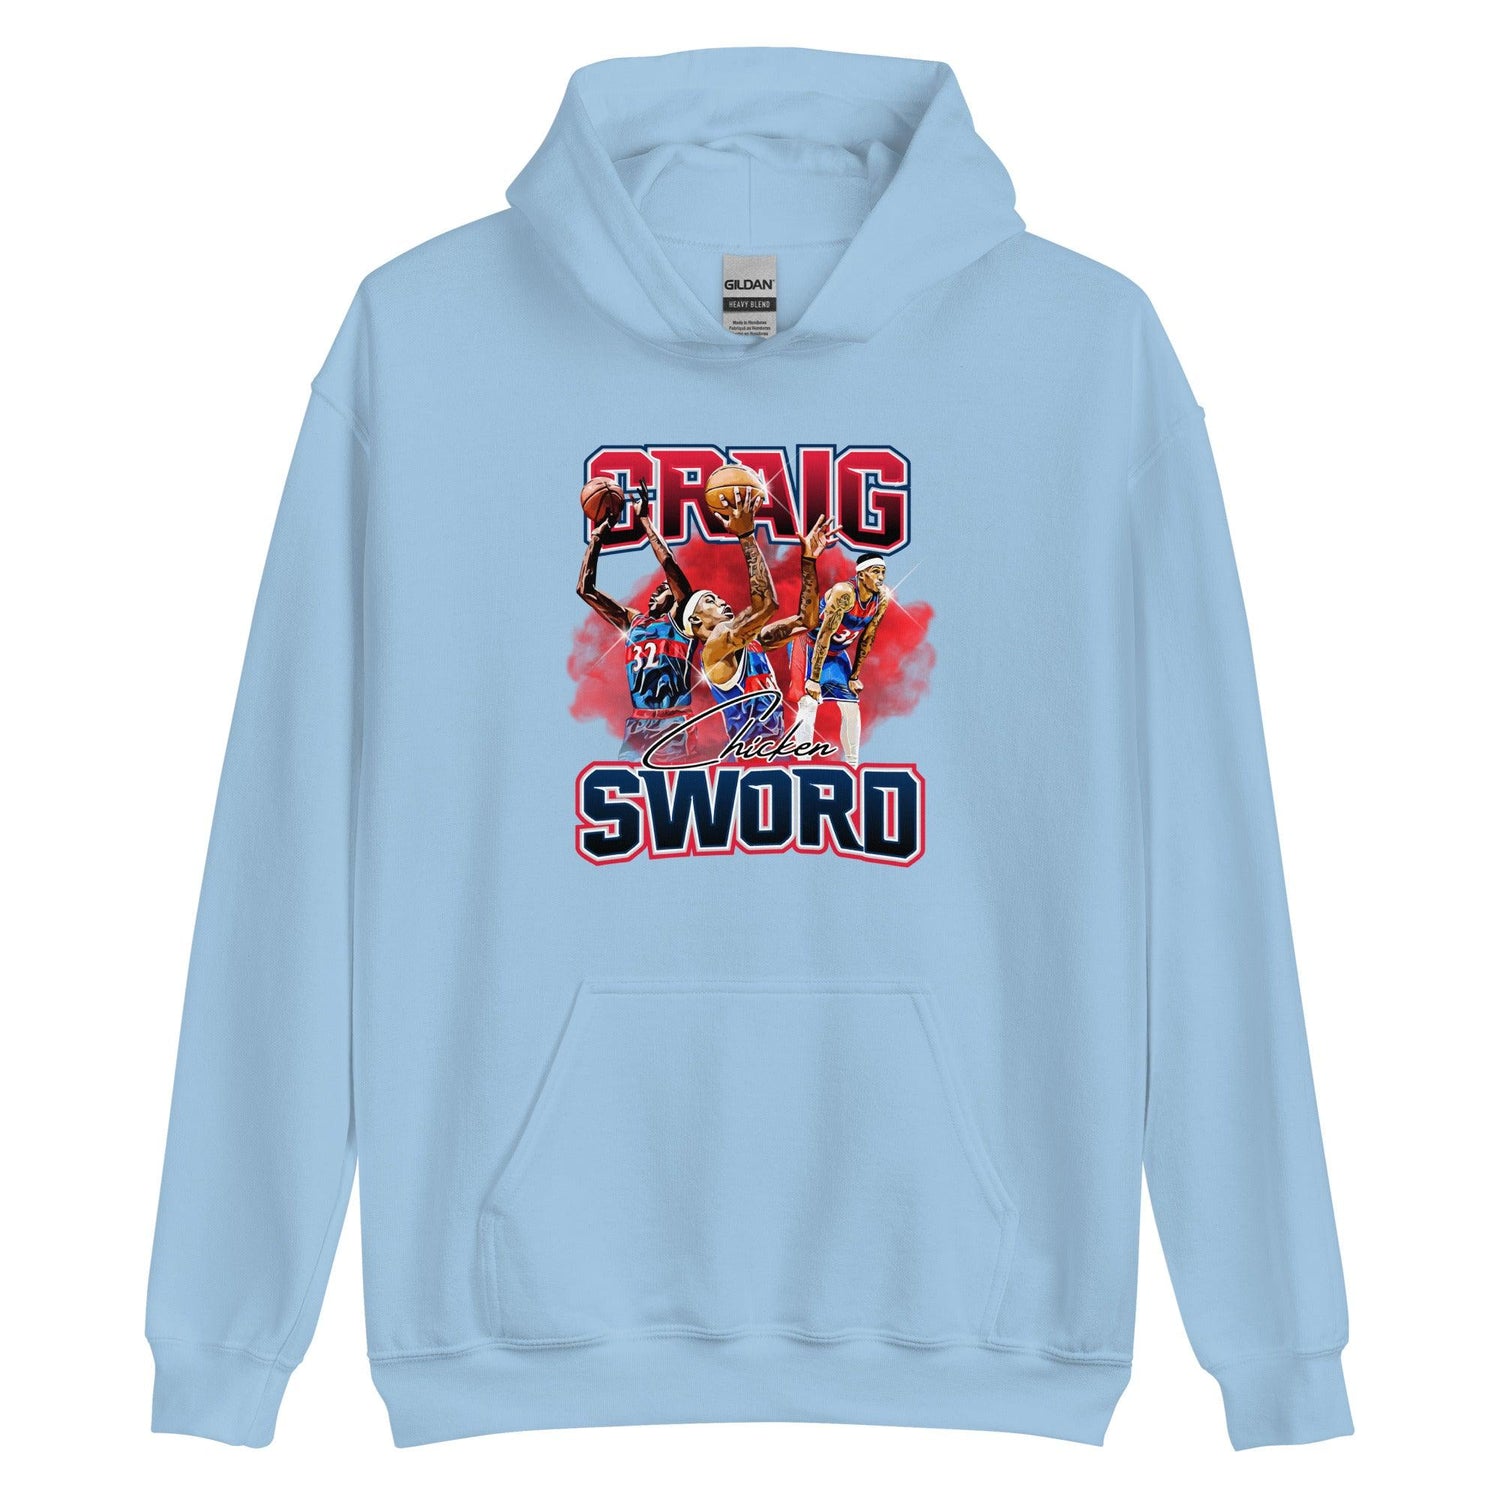 Craig Sword "Limited Edition" Hoodie - Fan Arch